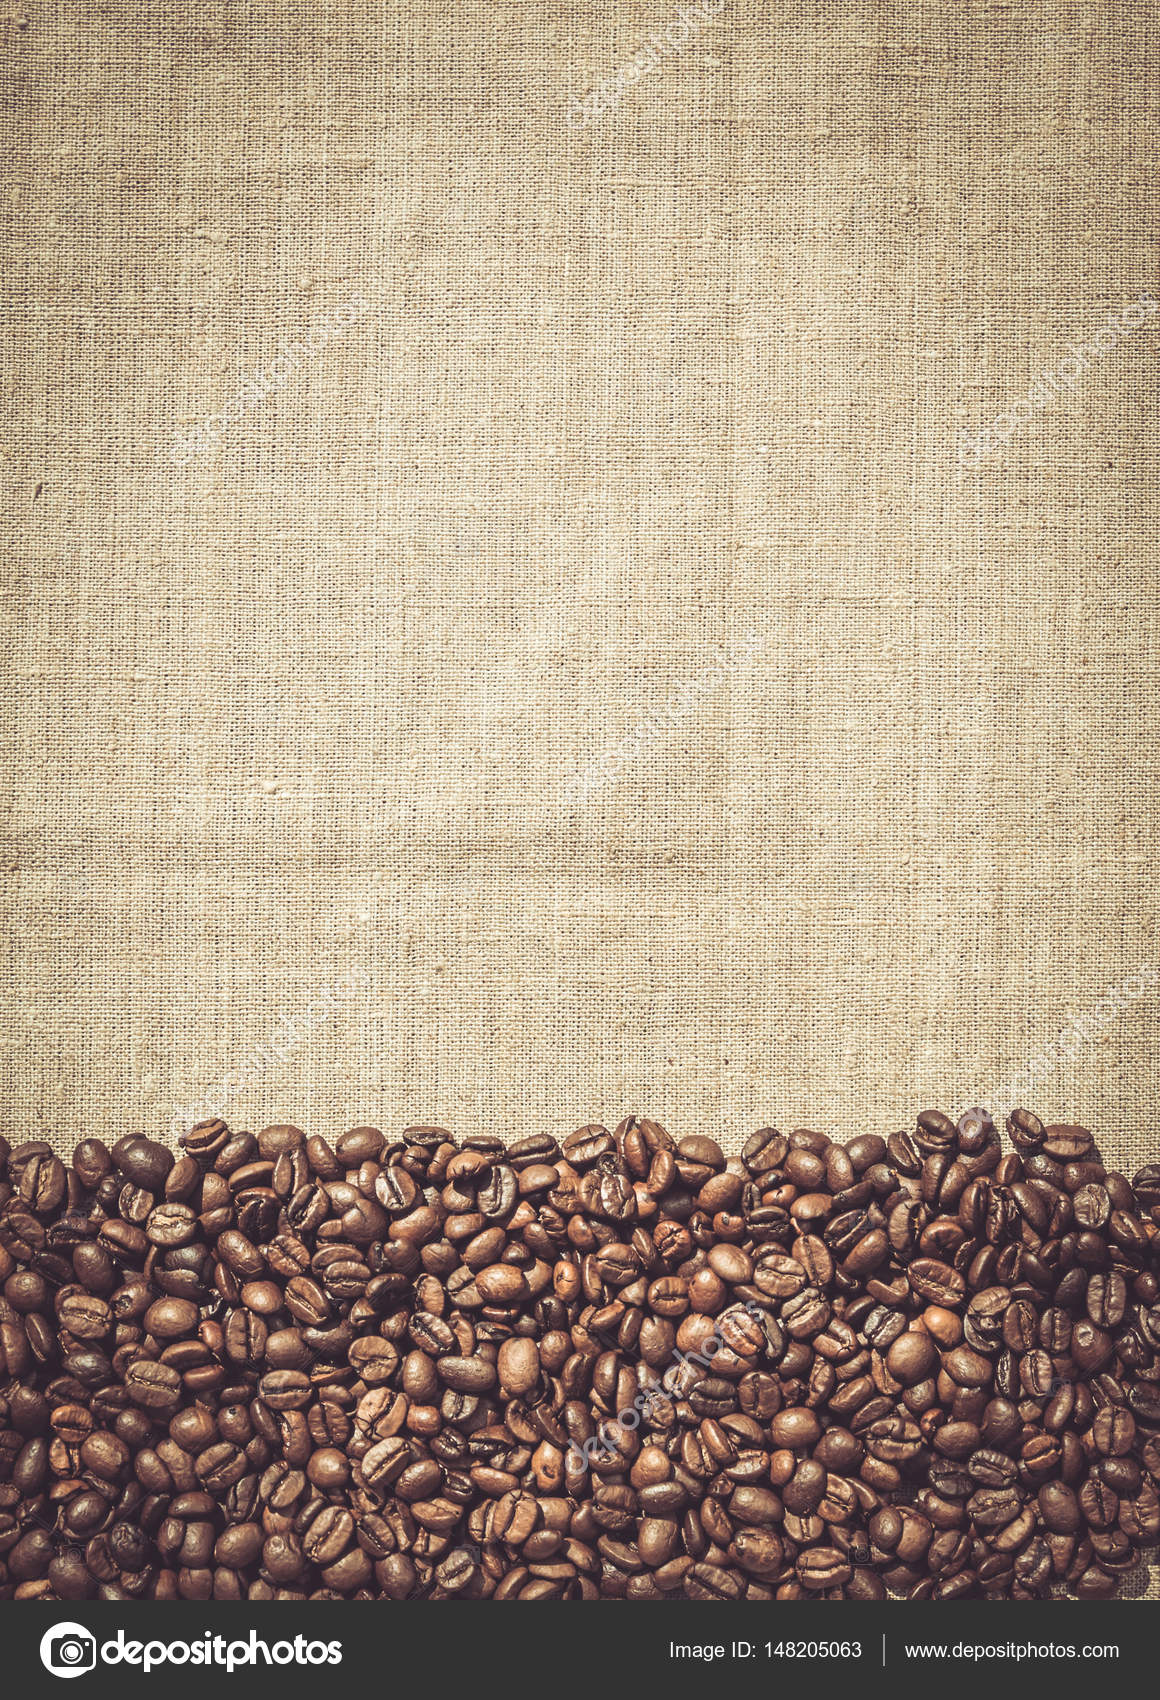 Thực đơn cà phê với hạt cà phê rang trên nền vải tạo nên một khung cảnh hoàn hảo cho những ai yêu thích hương vị đặc biệt của cà phê rang xay. Cùng nhau tìm hiểu về sản phẩm này và tham gia vào trải nghiệm cảm giác thật đặc biệt khi thưởng thức đồ uống này tại quán.